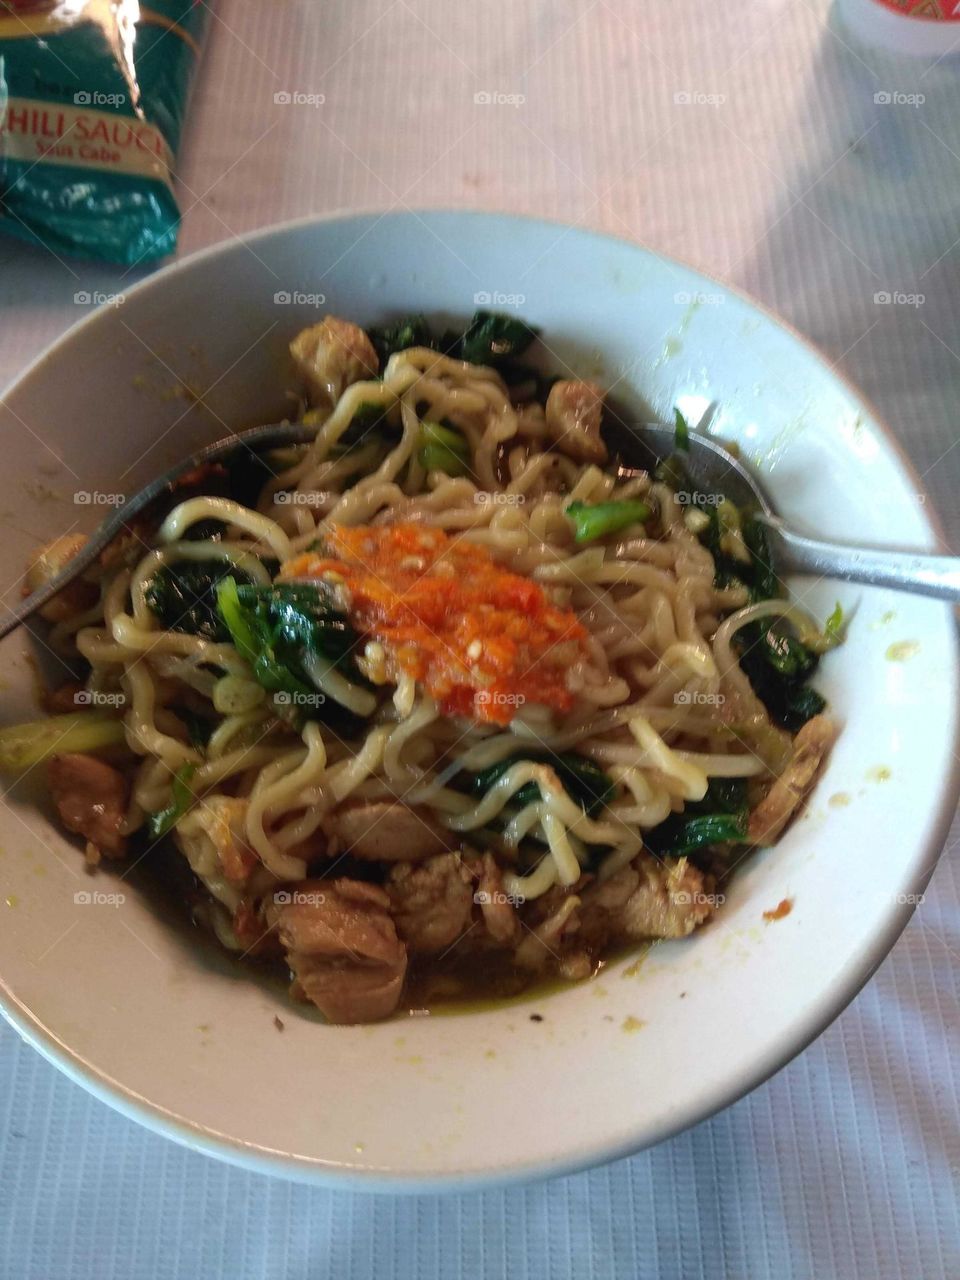 Delicious chicken noodle